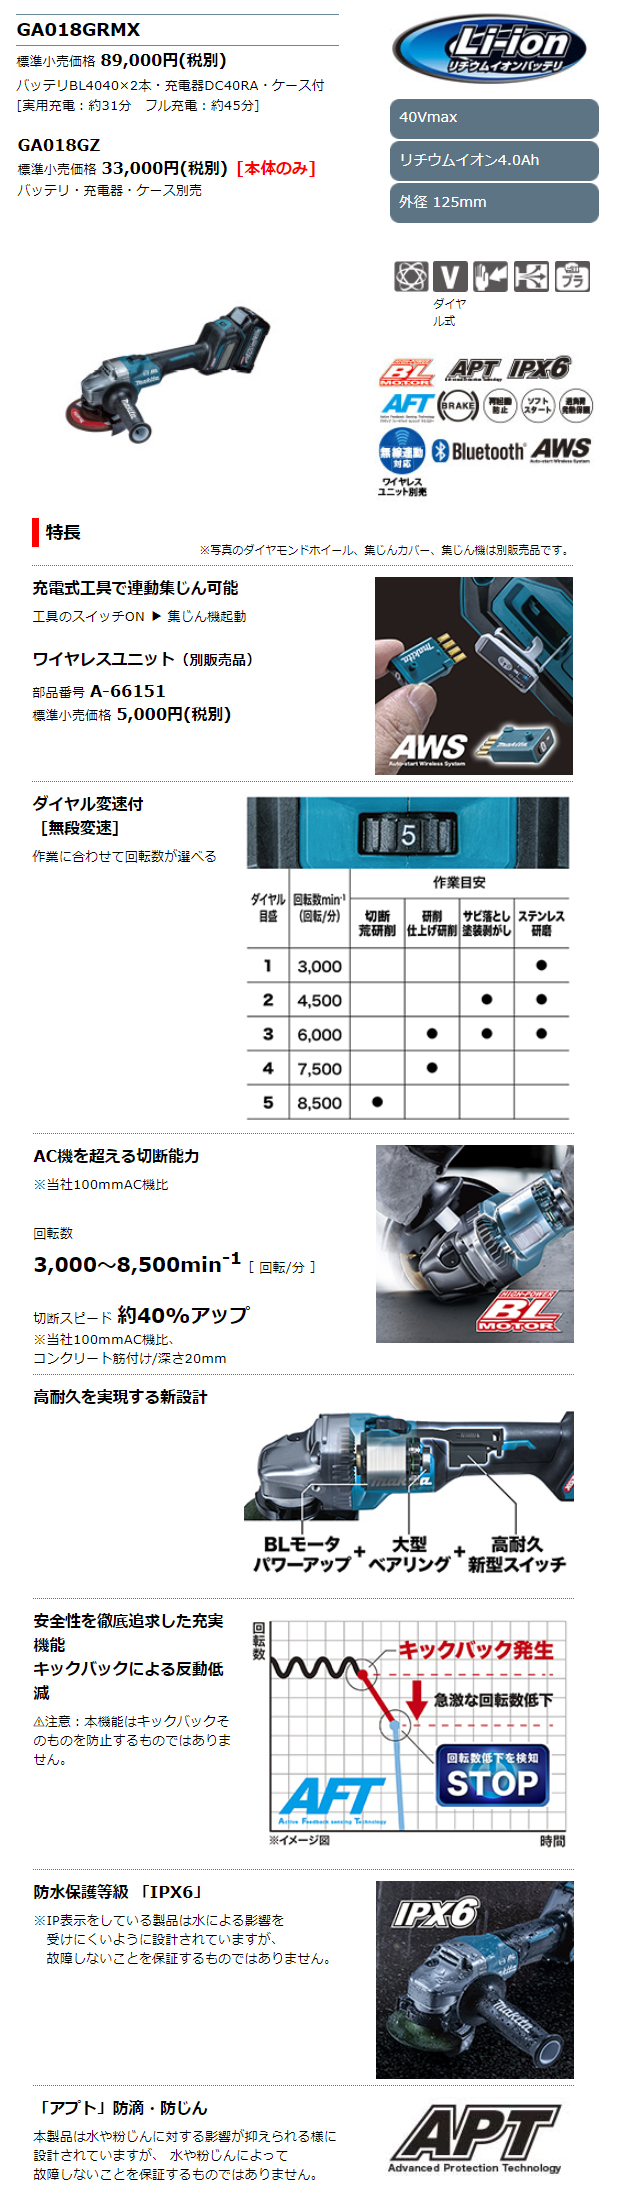 マキタ 40VMAX 125mmスライドスイッチ充電式ディスクグラインダ GA018GRMX/GZ